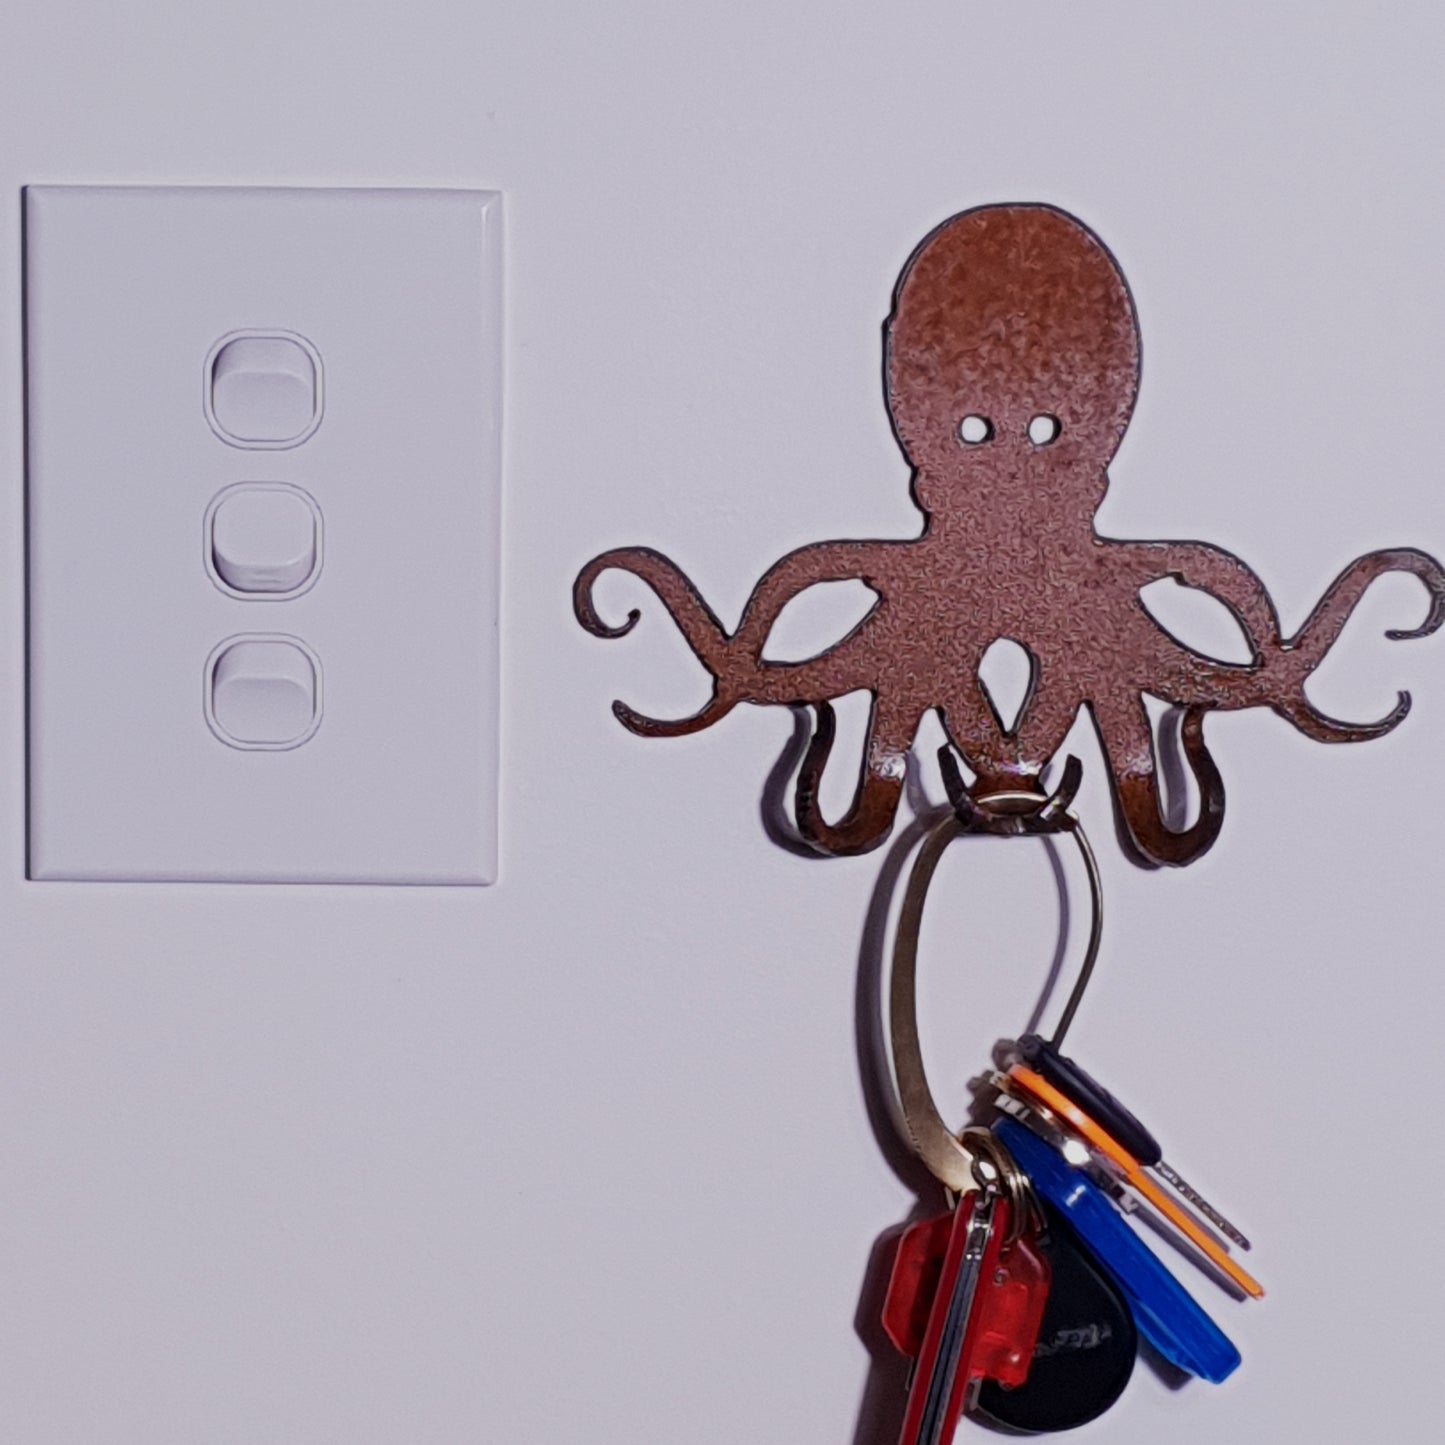 Octopus hook from Ninapatina